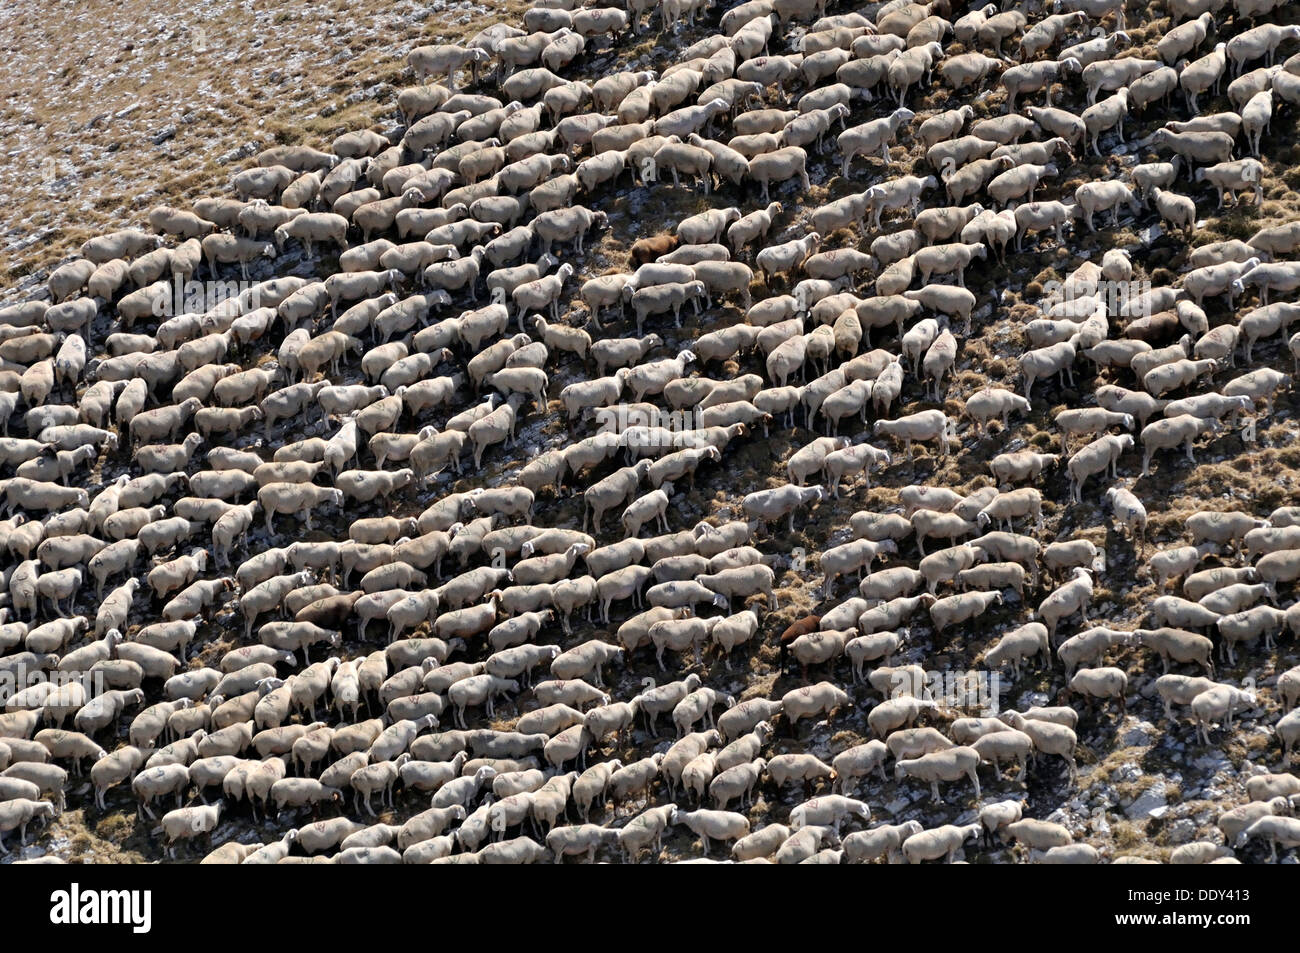 Flock of sheep huddled together Stock Photo